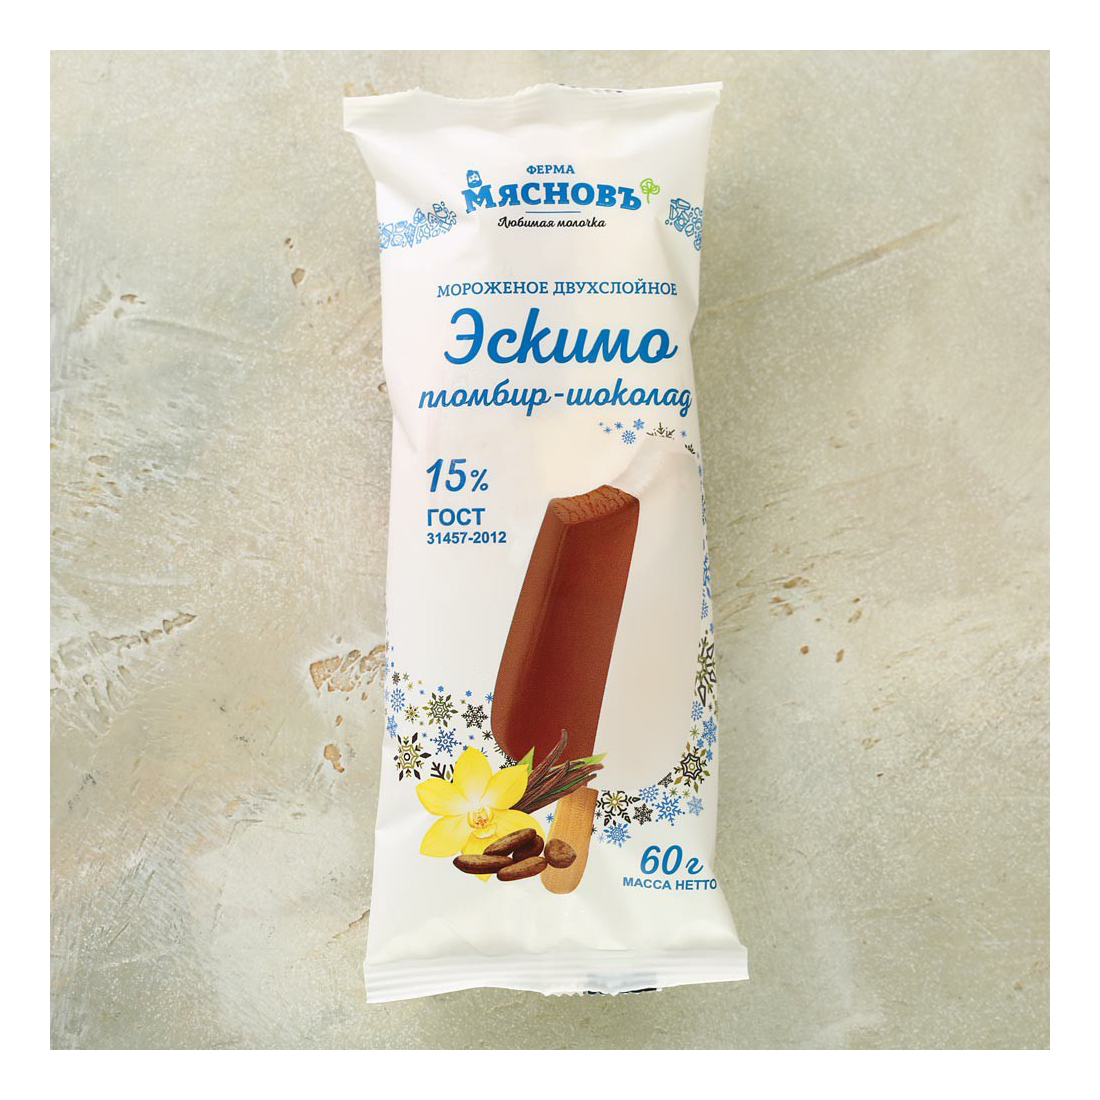 Мороженое эскимо МясновЪ ФЕРМА пломбир и шоколад двухслойное ГОСТ 15% 60 г